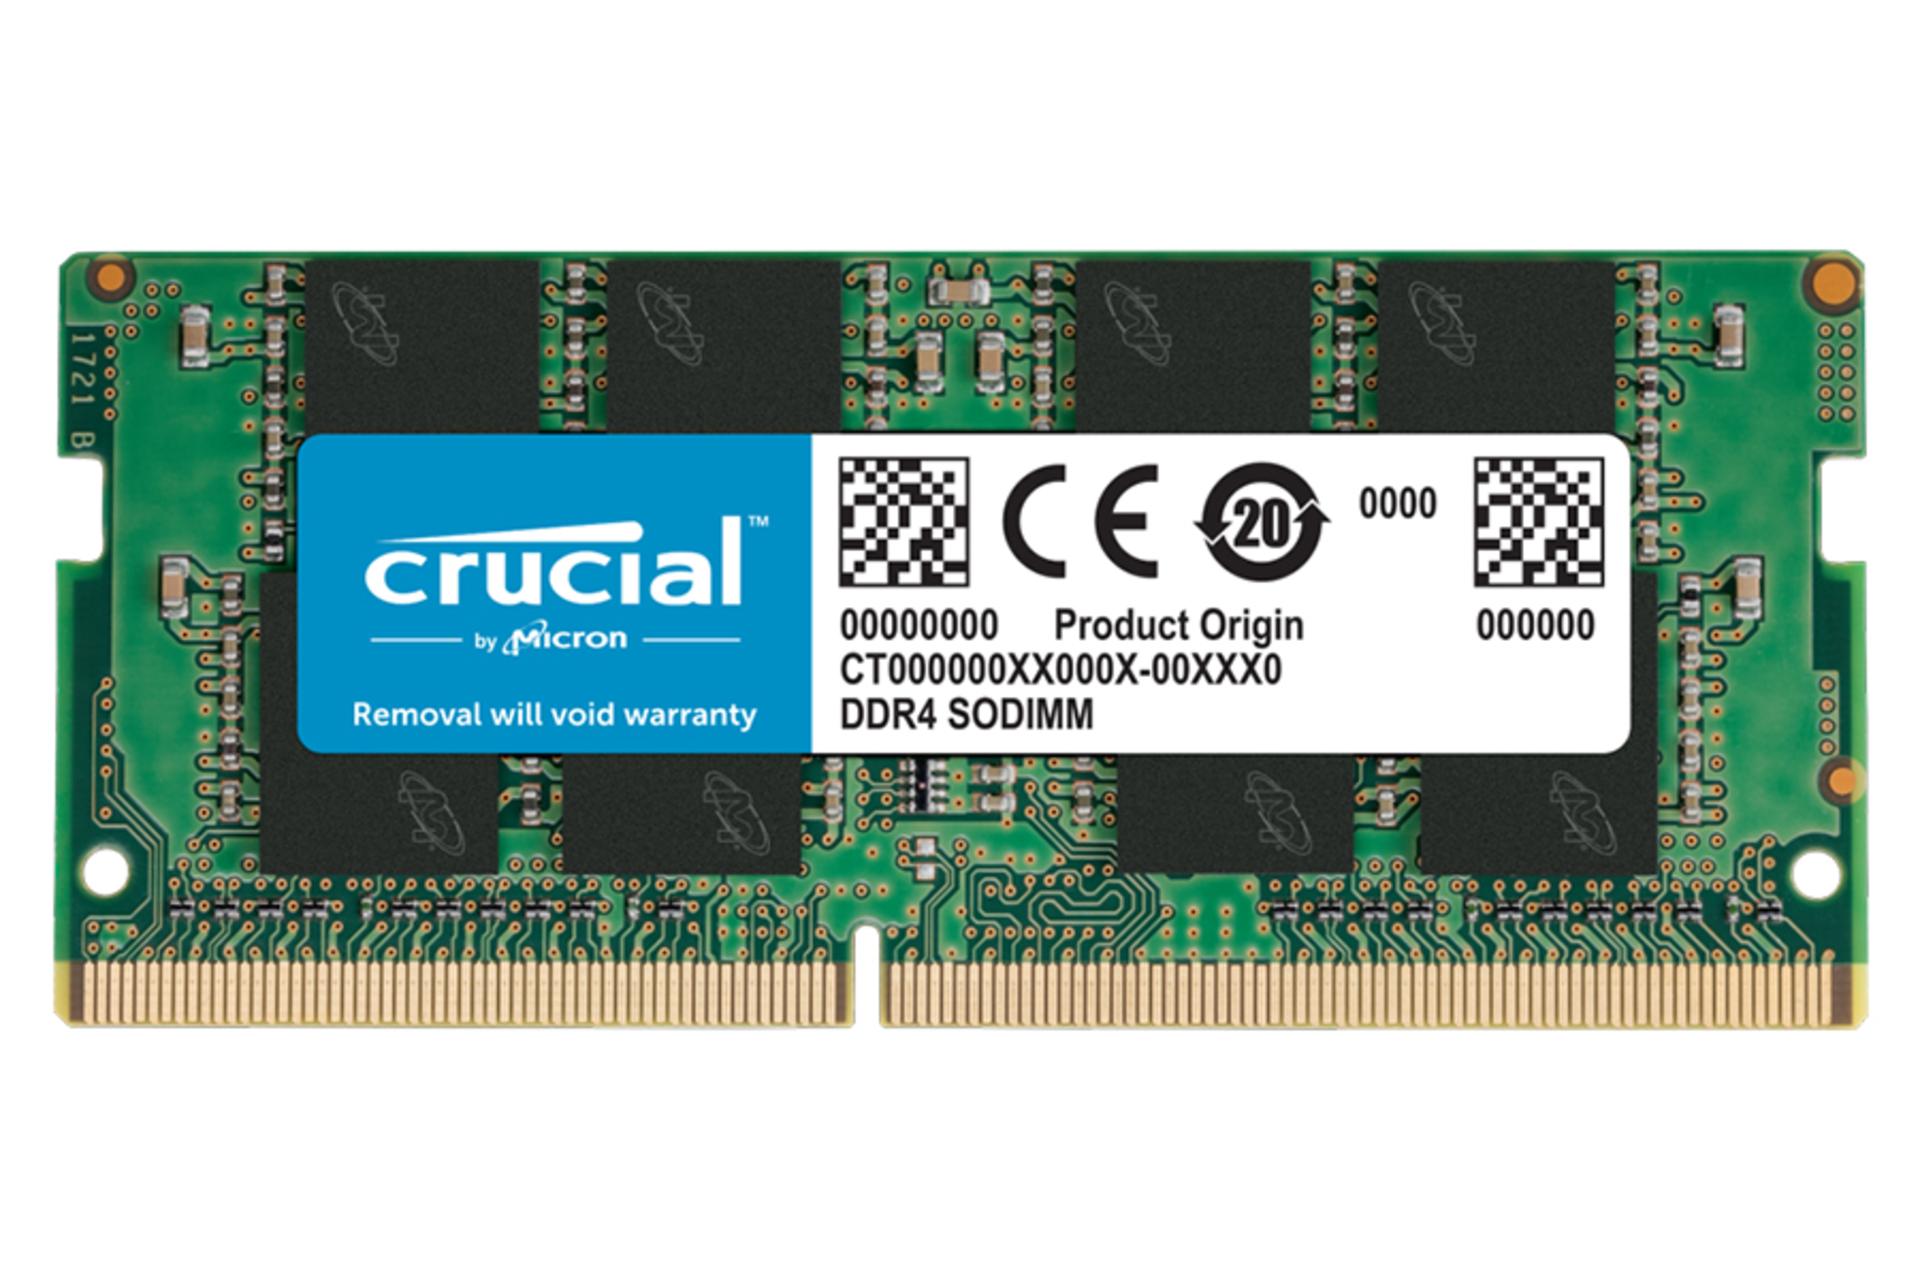 مرجع متخصصين ايران نماي جلو رم كروشيال CB8GS2666 ظرفيت 8 گيگابايت از نوع DDR4-2666